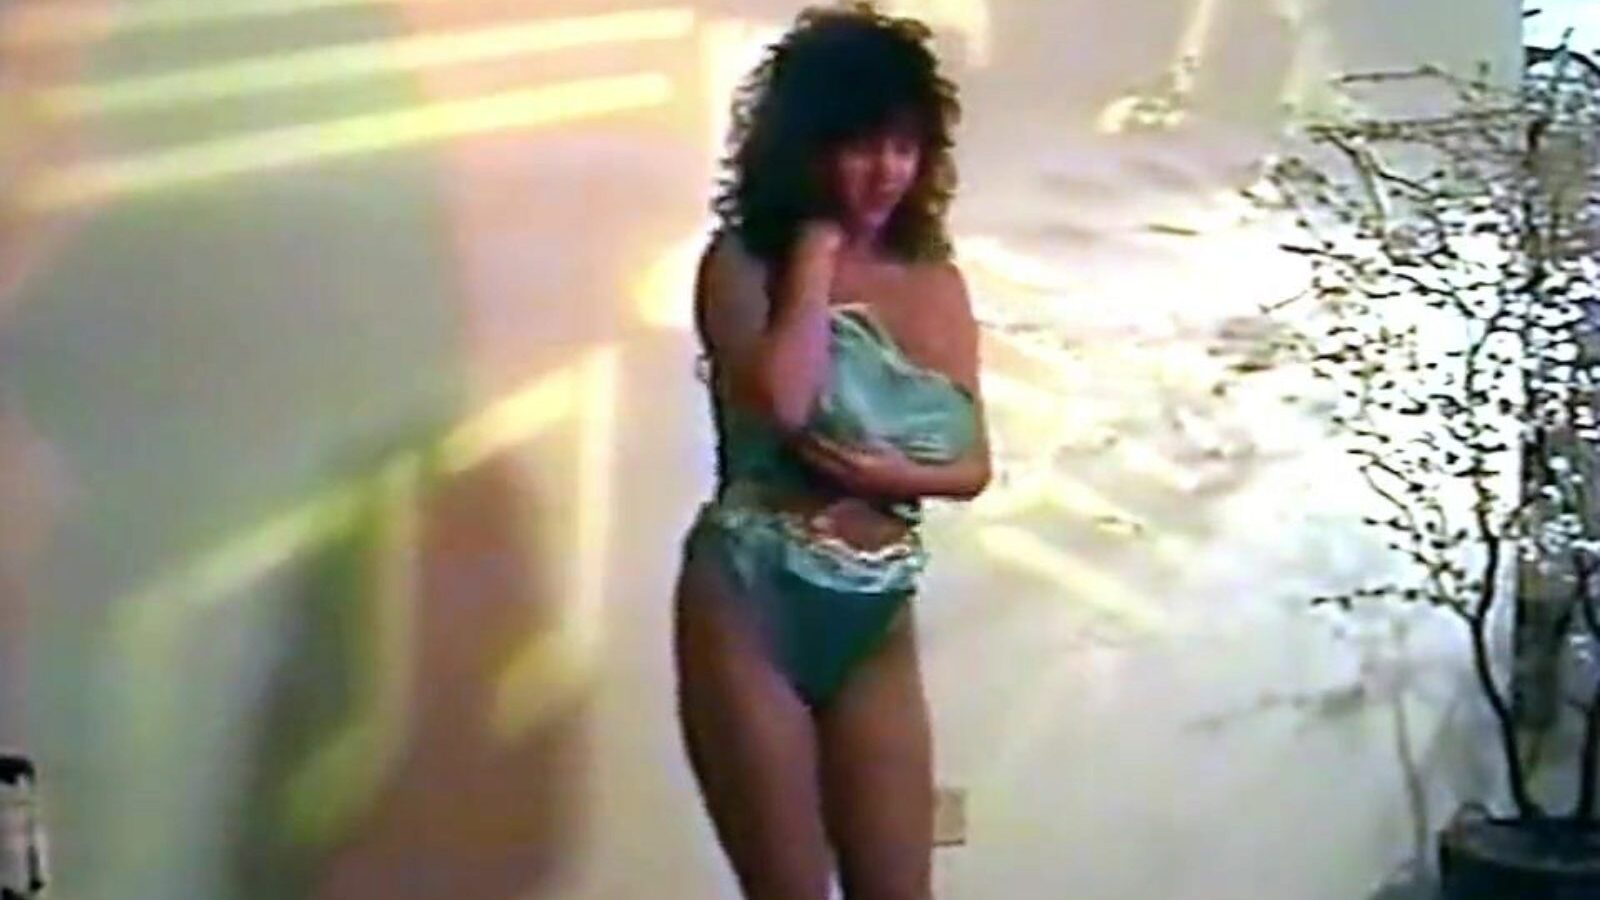 takıntı - vintage 80'lerin iç çamaşırı striptiz dansı büyük saat takıntılı - vintage 80'lerin iç çamaşırı striptiz dansı xhamster'da büyük memeli film - her şey için ücretsiz İngiliz göğüslerinin nihai veritabanı büyük hd pornografi tüp klipleri